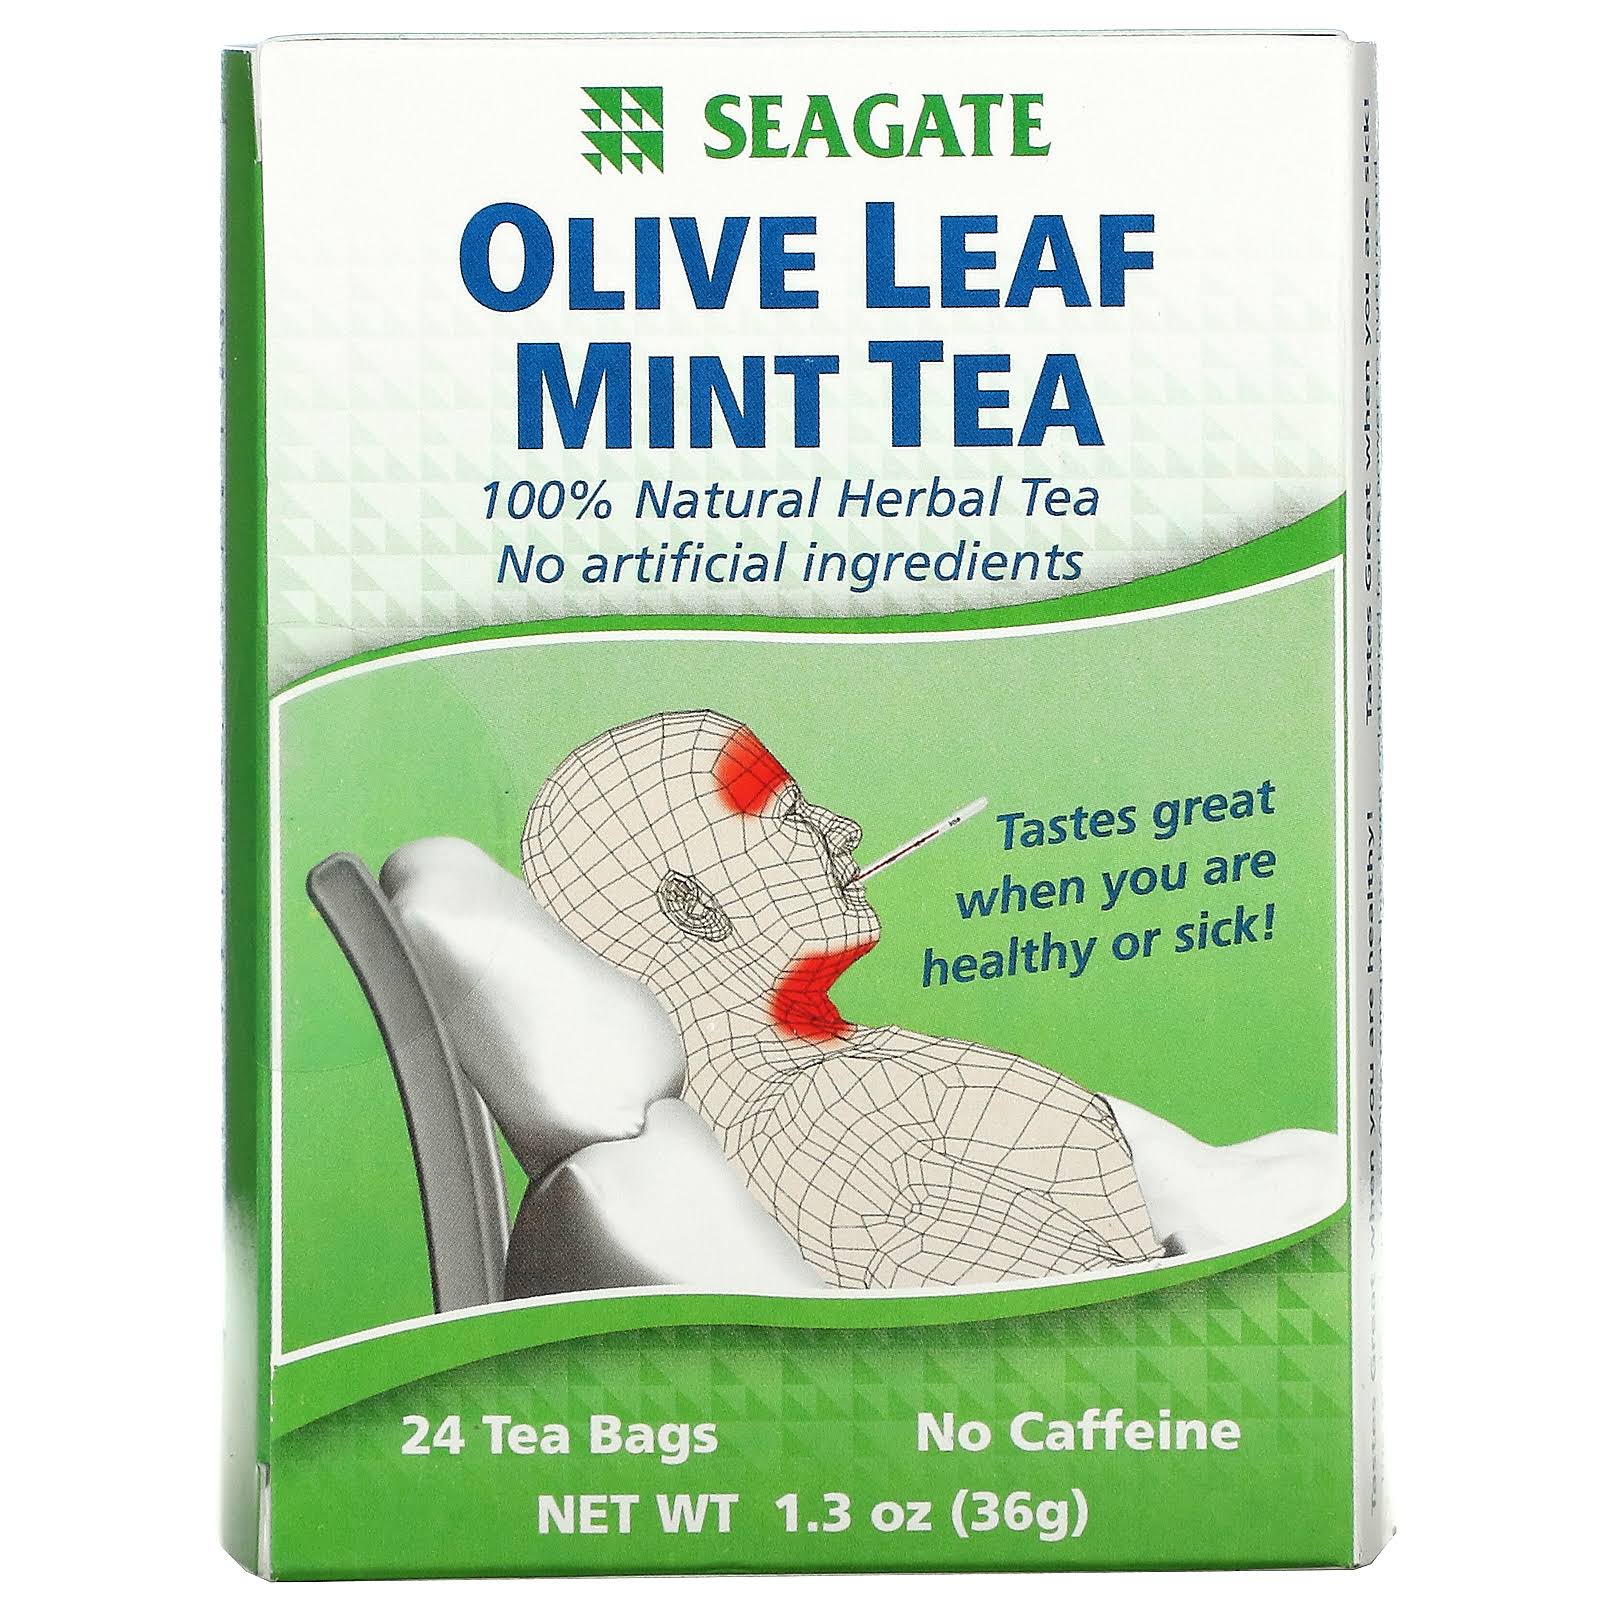 Seagate Olive Leaf Mint Tea - 24ct, 1.3oz